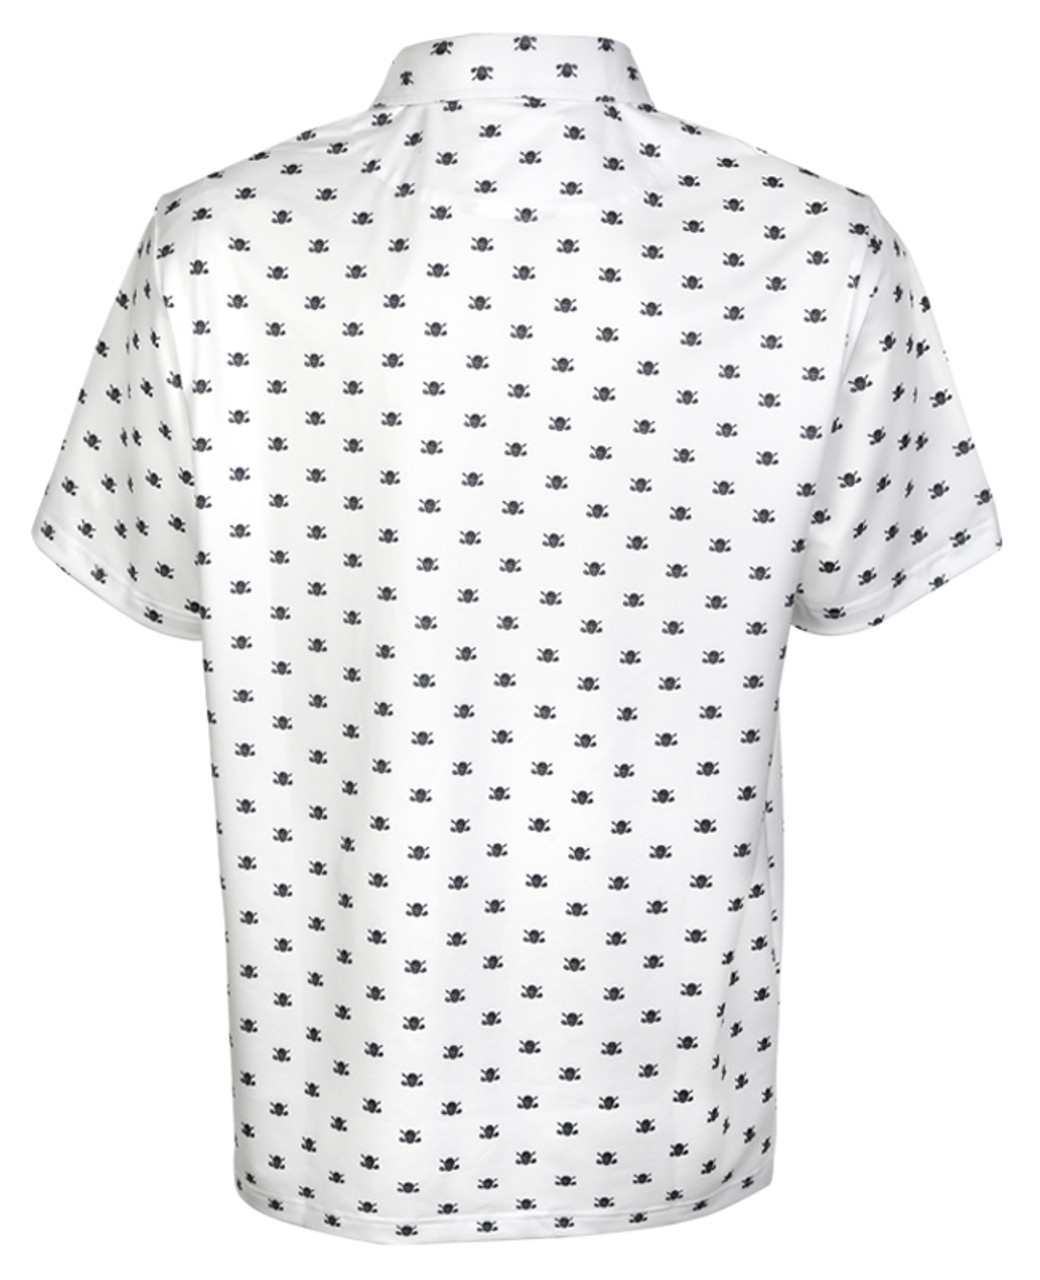 VIP Skull Design Men's Paisley Golf Shirt (white) Skull Golf